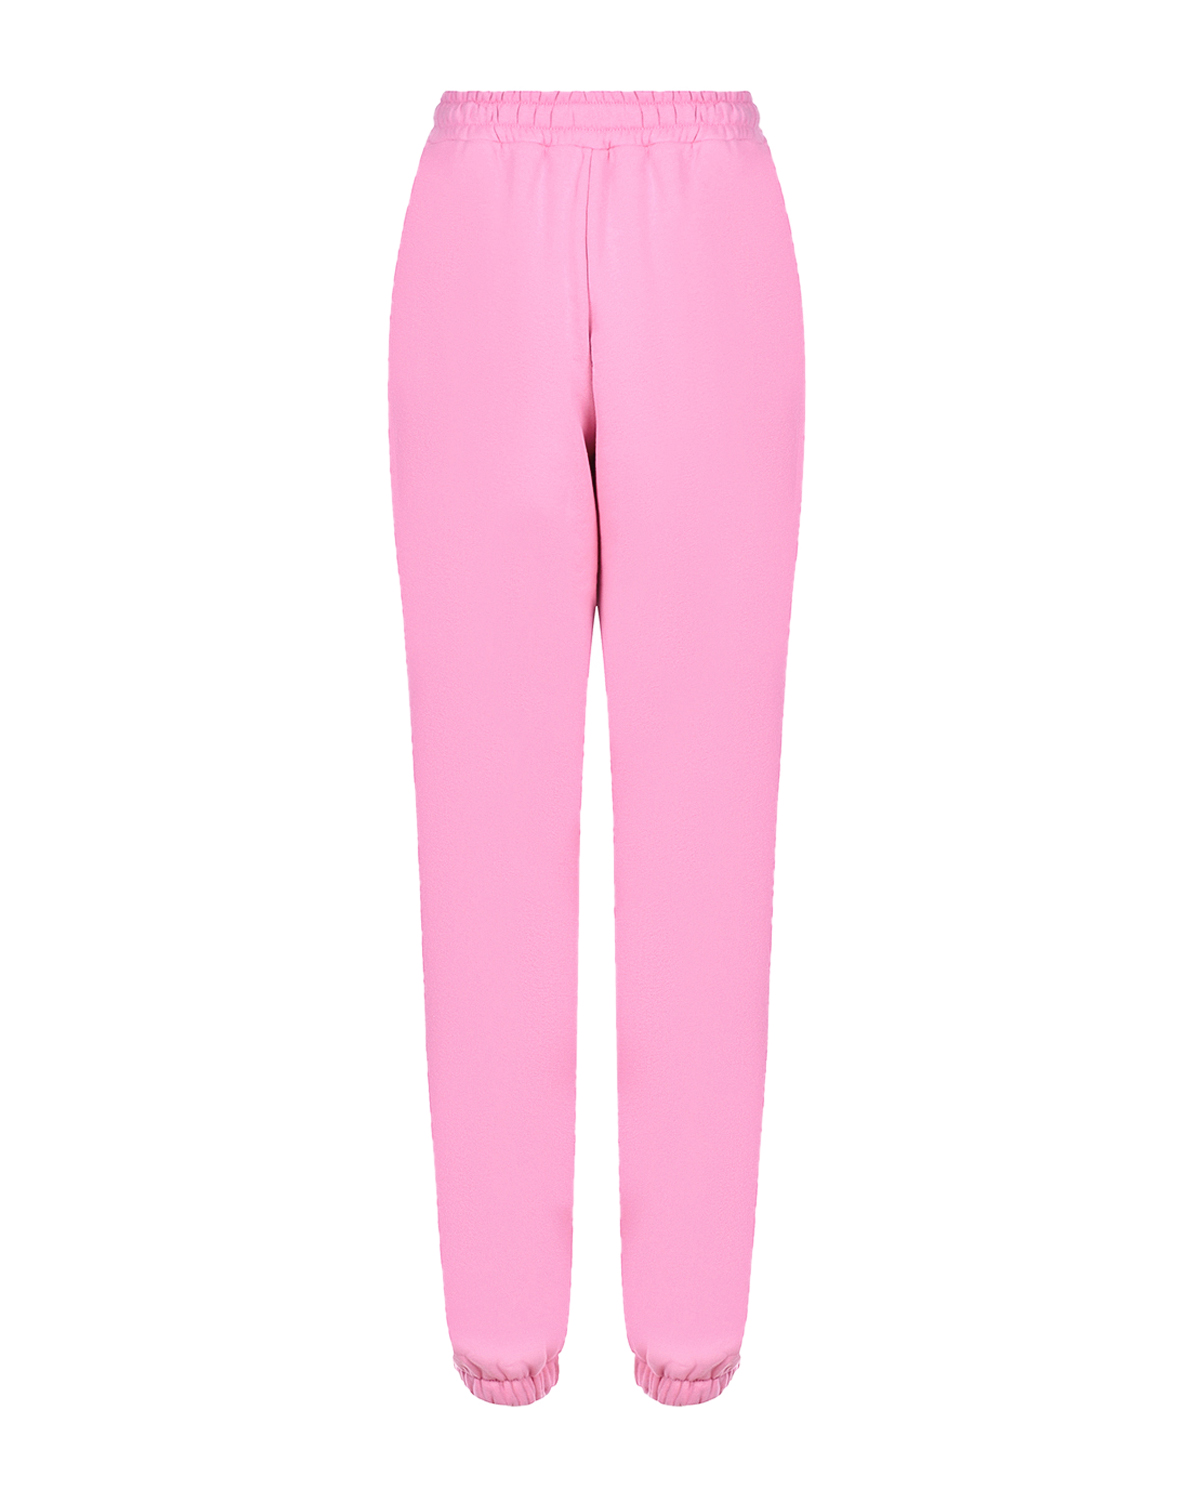 Розовые трикотажные брюки Dan Maralex, размер 42, цвет розовый - фото 7